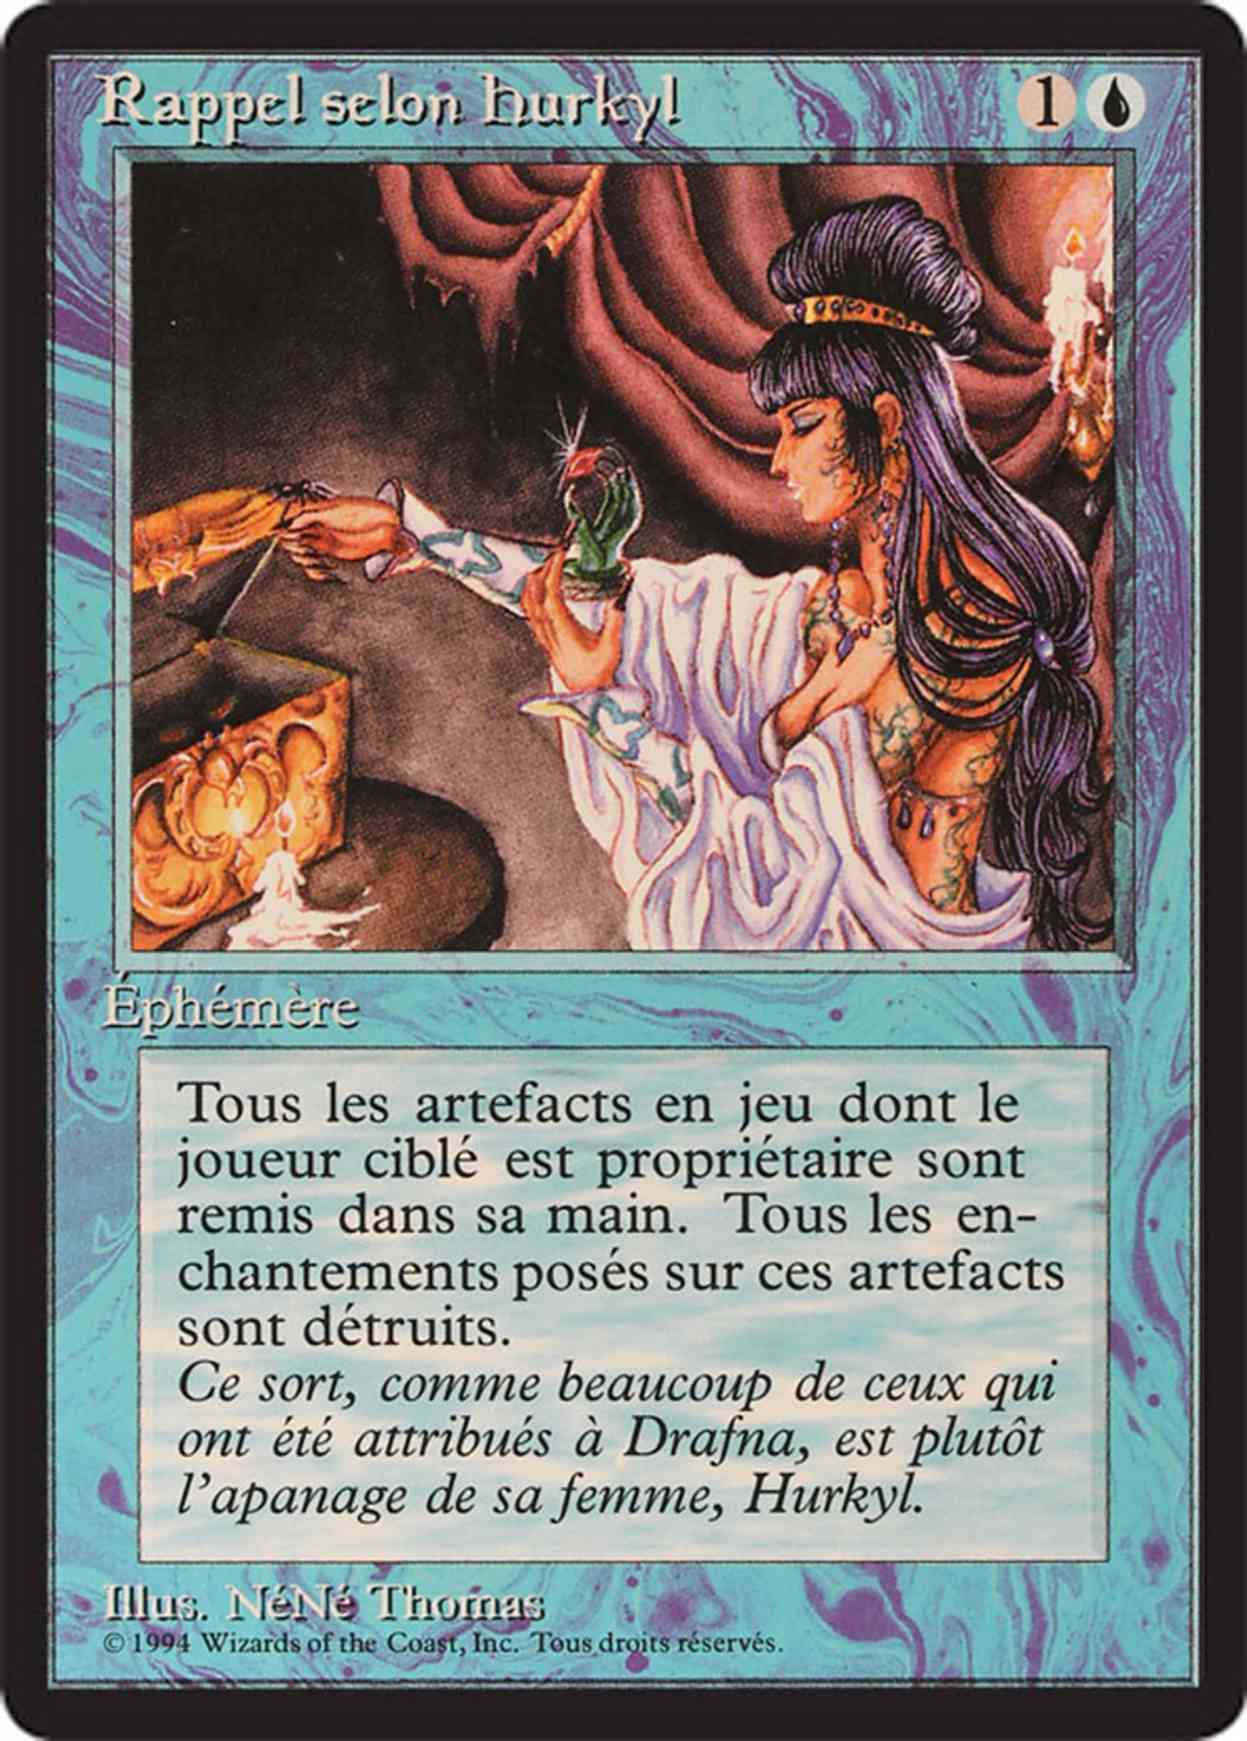 Hurkyl's Recall magic card front